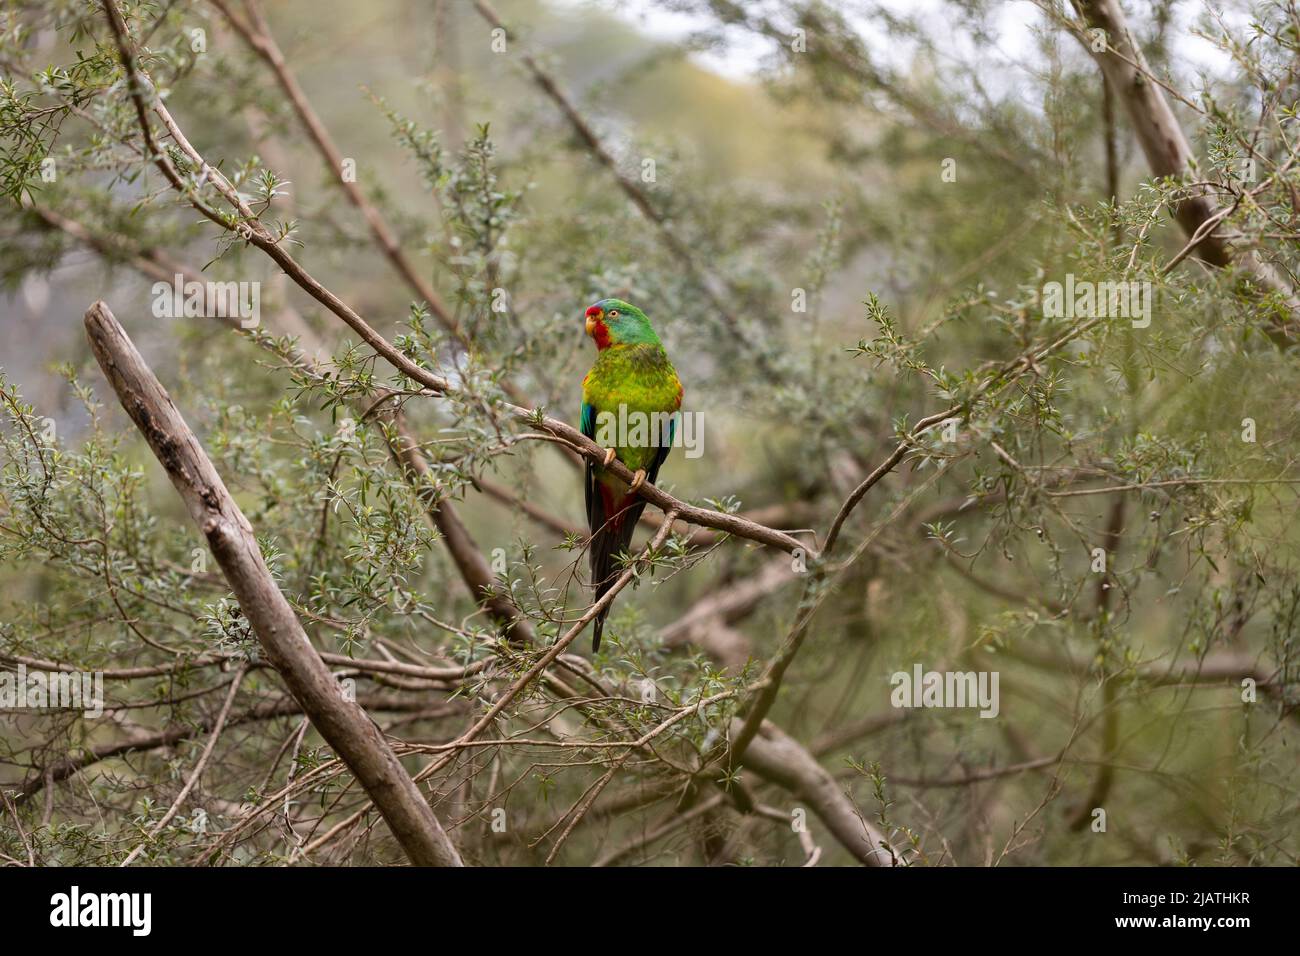 Un australiano ha messo in pericolo criticamente il pappagallo migratorio rapido (Lathamus scoloror) che deve affrontare l'estinzione a causa del disboscamento e del cambiamento climatico Foto Stock